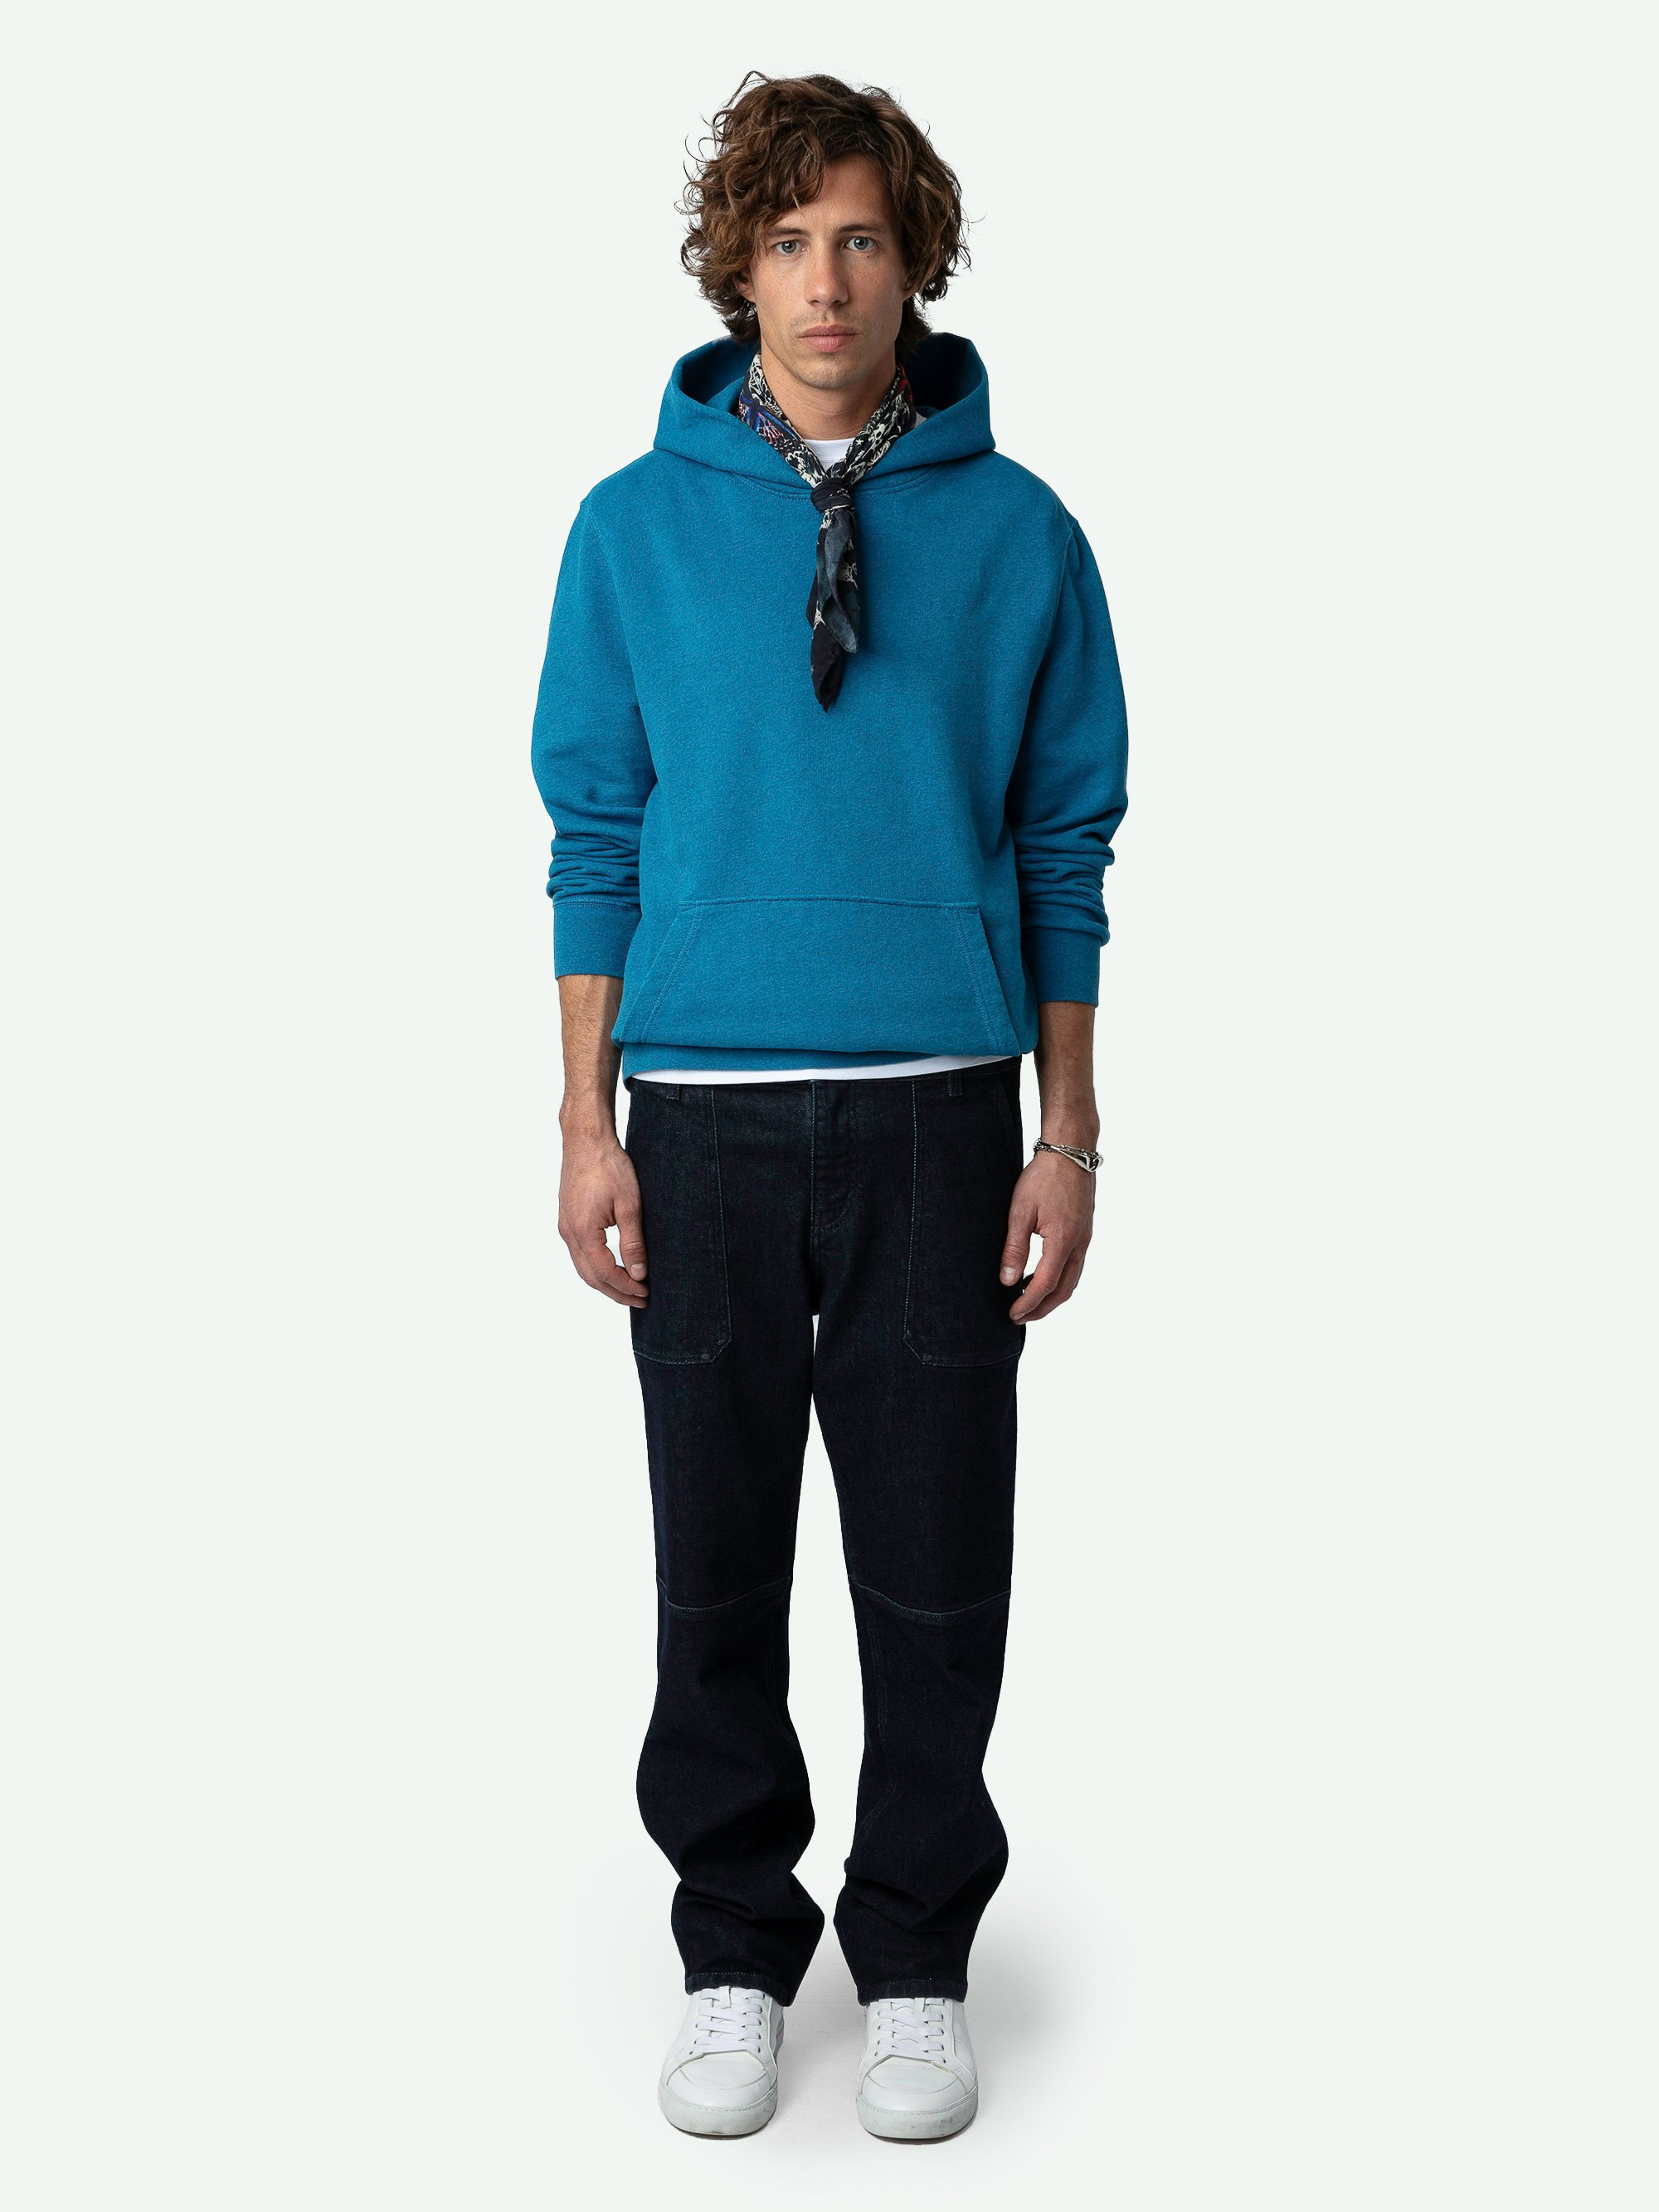 Sanchi Photoprint Sweatshirt - Long-sleeved oversized hooded fleece sweatshirt with Rainbow photoprint on the back.